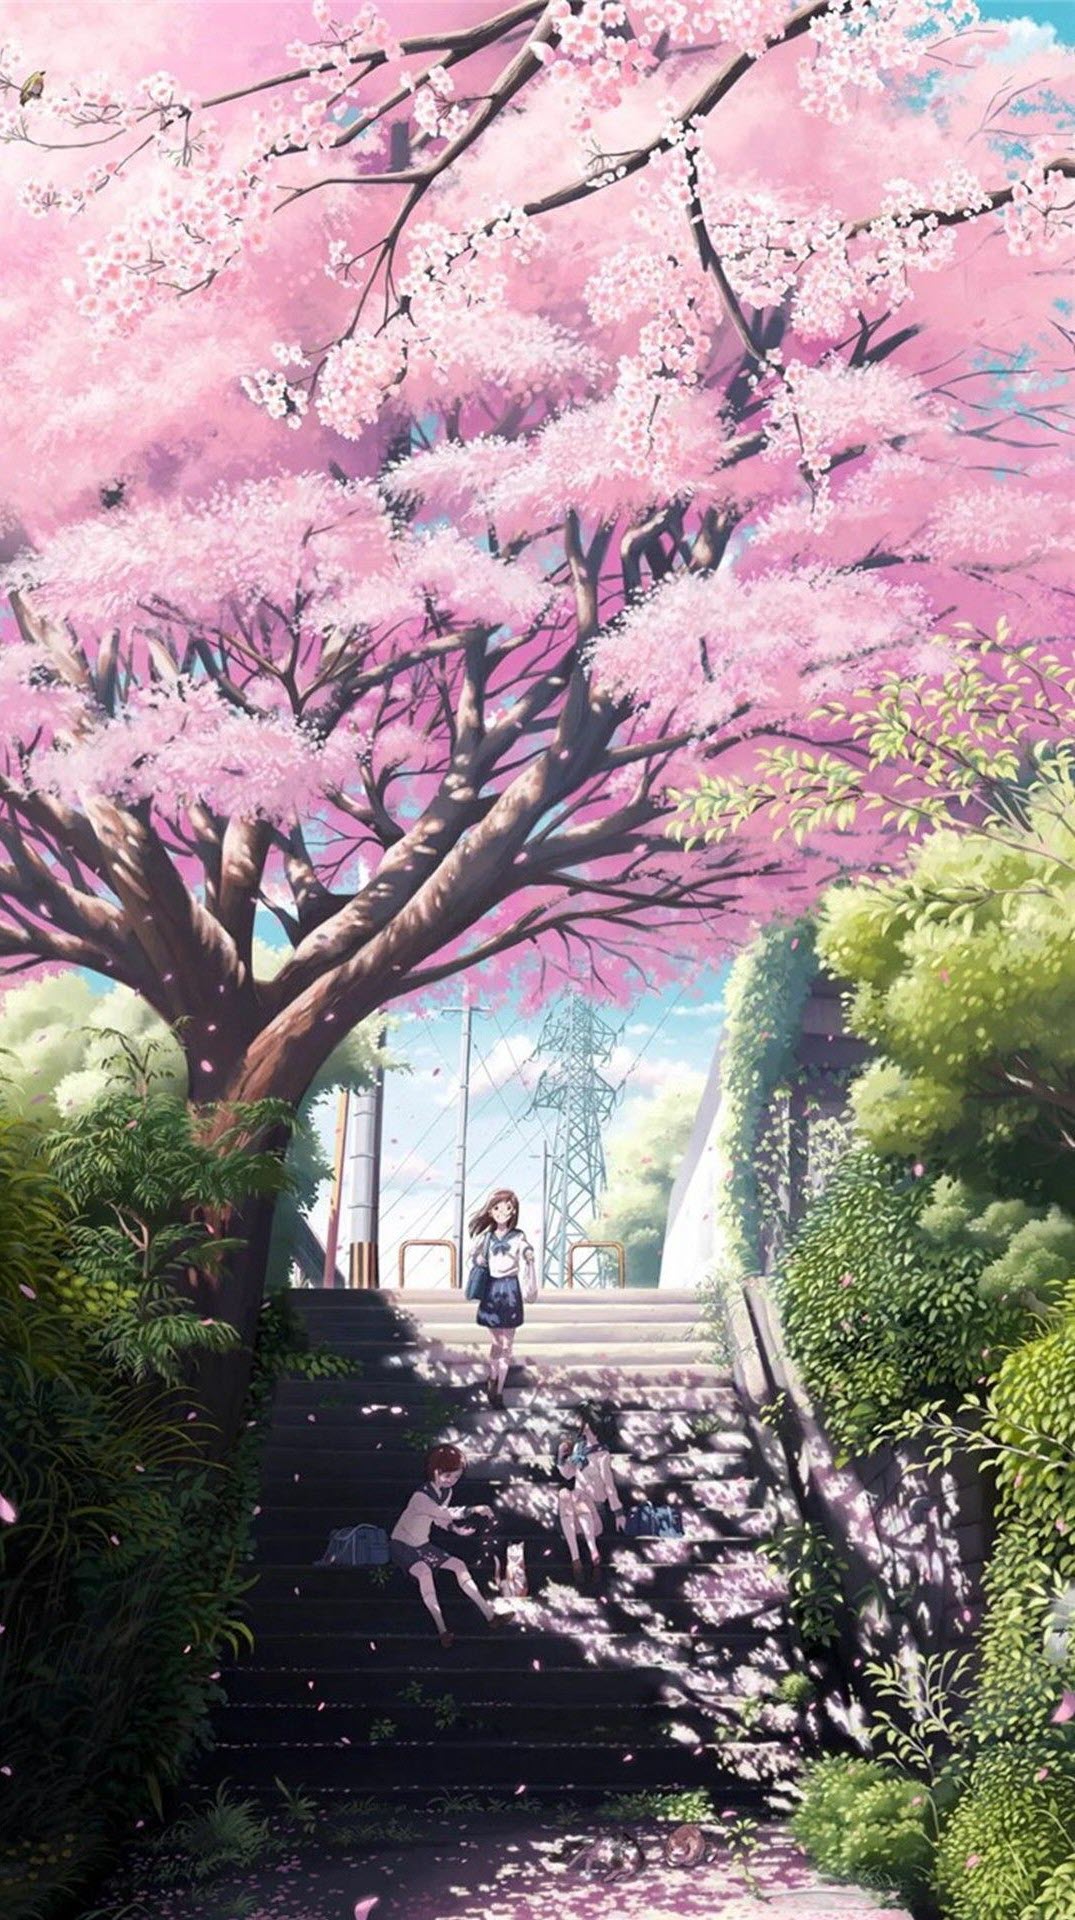 Anime hoa anh đào sẽ đưa bạn vào một thế giới kỳ diệu, với màu sắc nổi bật và những bông hoa anh đào tỏa sáng khắp nơi. Hãy nhanh tay xem ngay nhé!